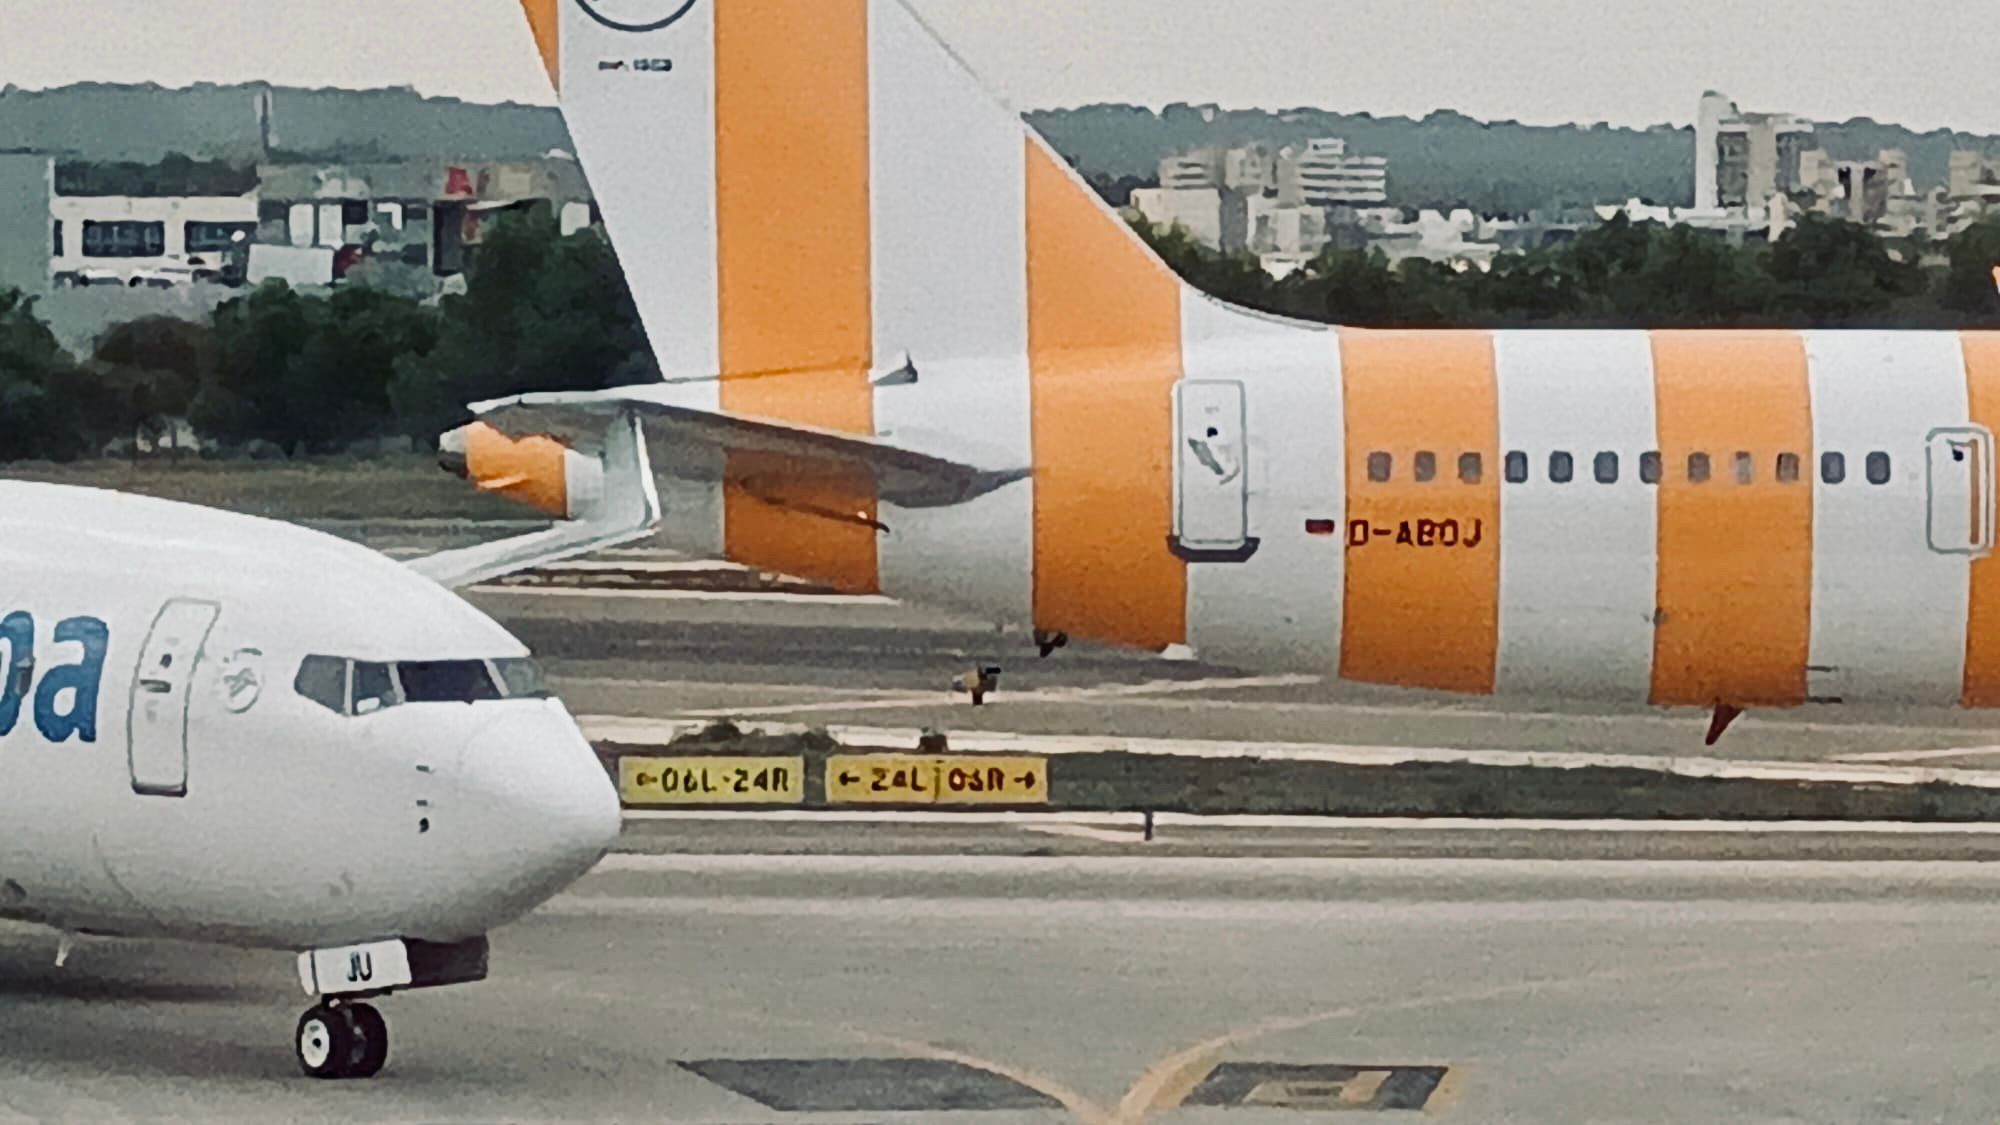 Dos aviones chocan en el aeropuerto de Palma